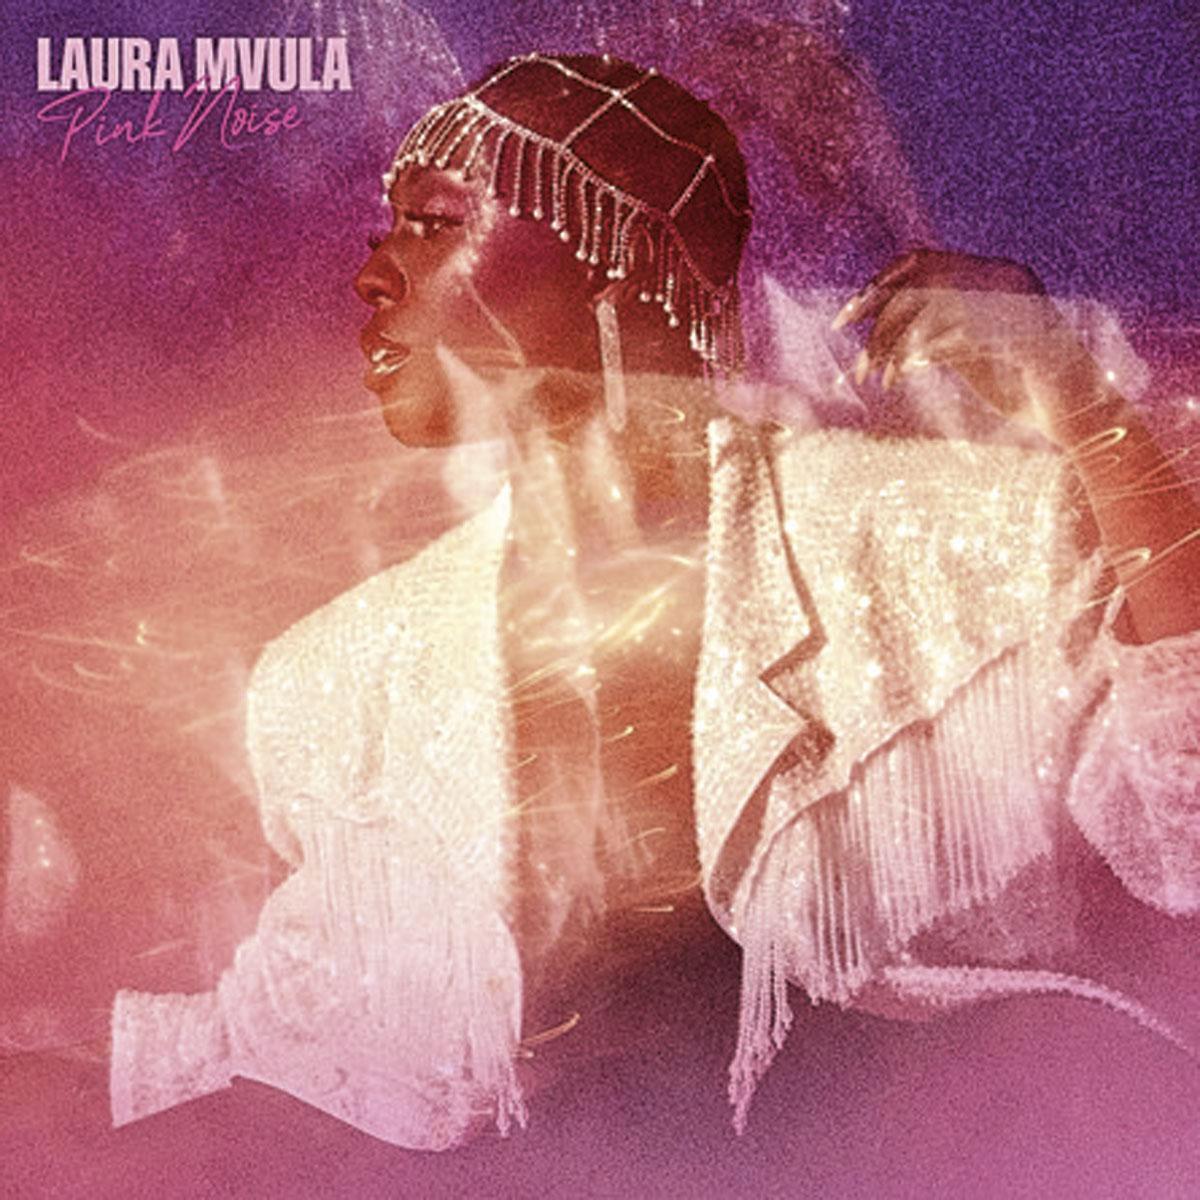 Blits en complexloos: de nieuwe plaat van Laura Mvula is onbeschaamd eighties